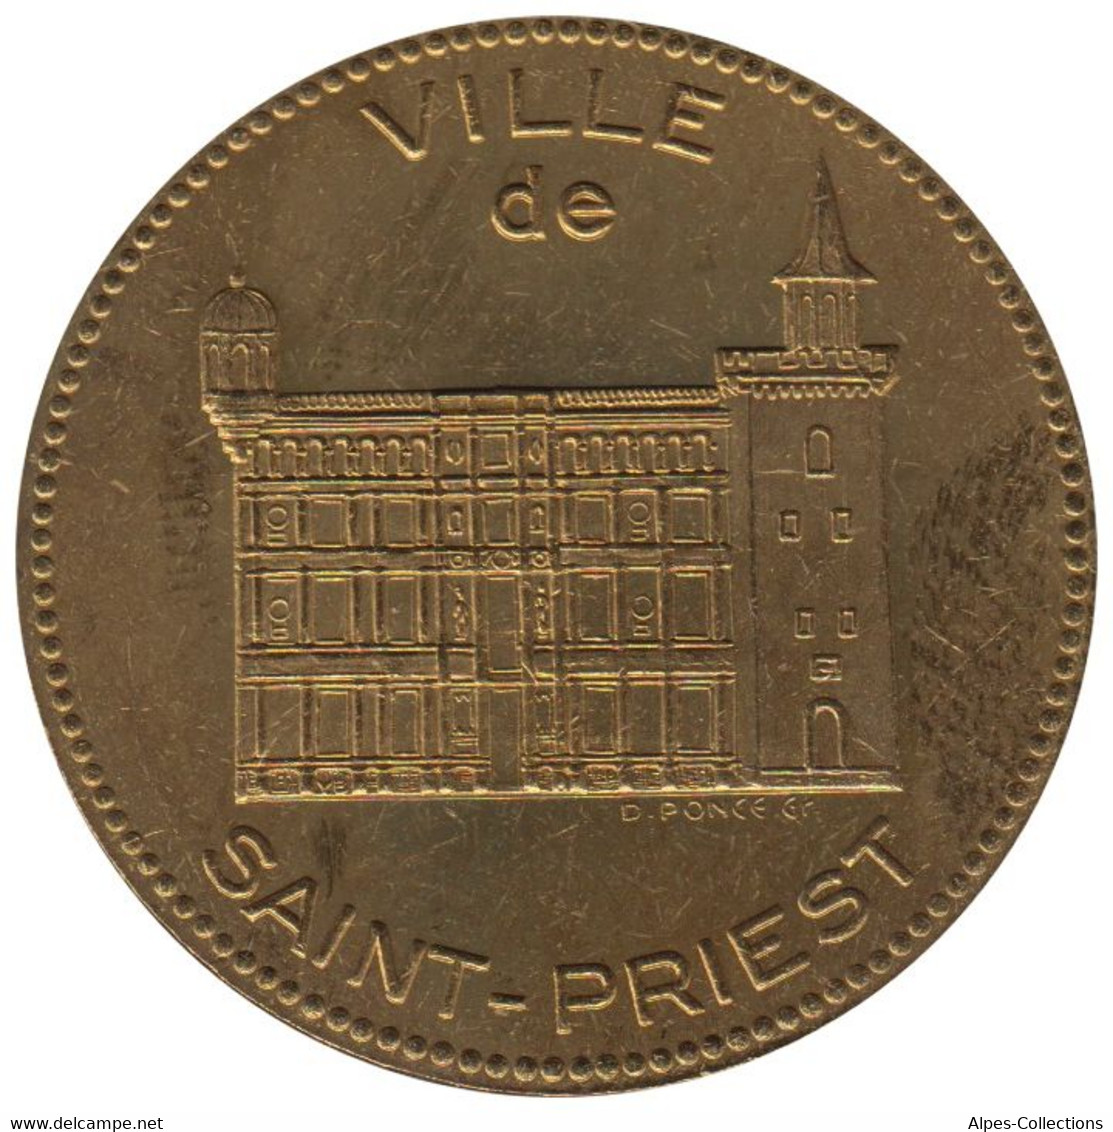 SAINT PRIEST - EC0020.3 - DOUBLE ECU DES VILLES - Réf: T28 - 1994 - Euros Of The Cities